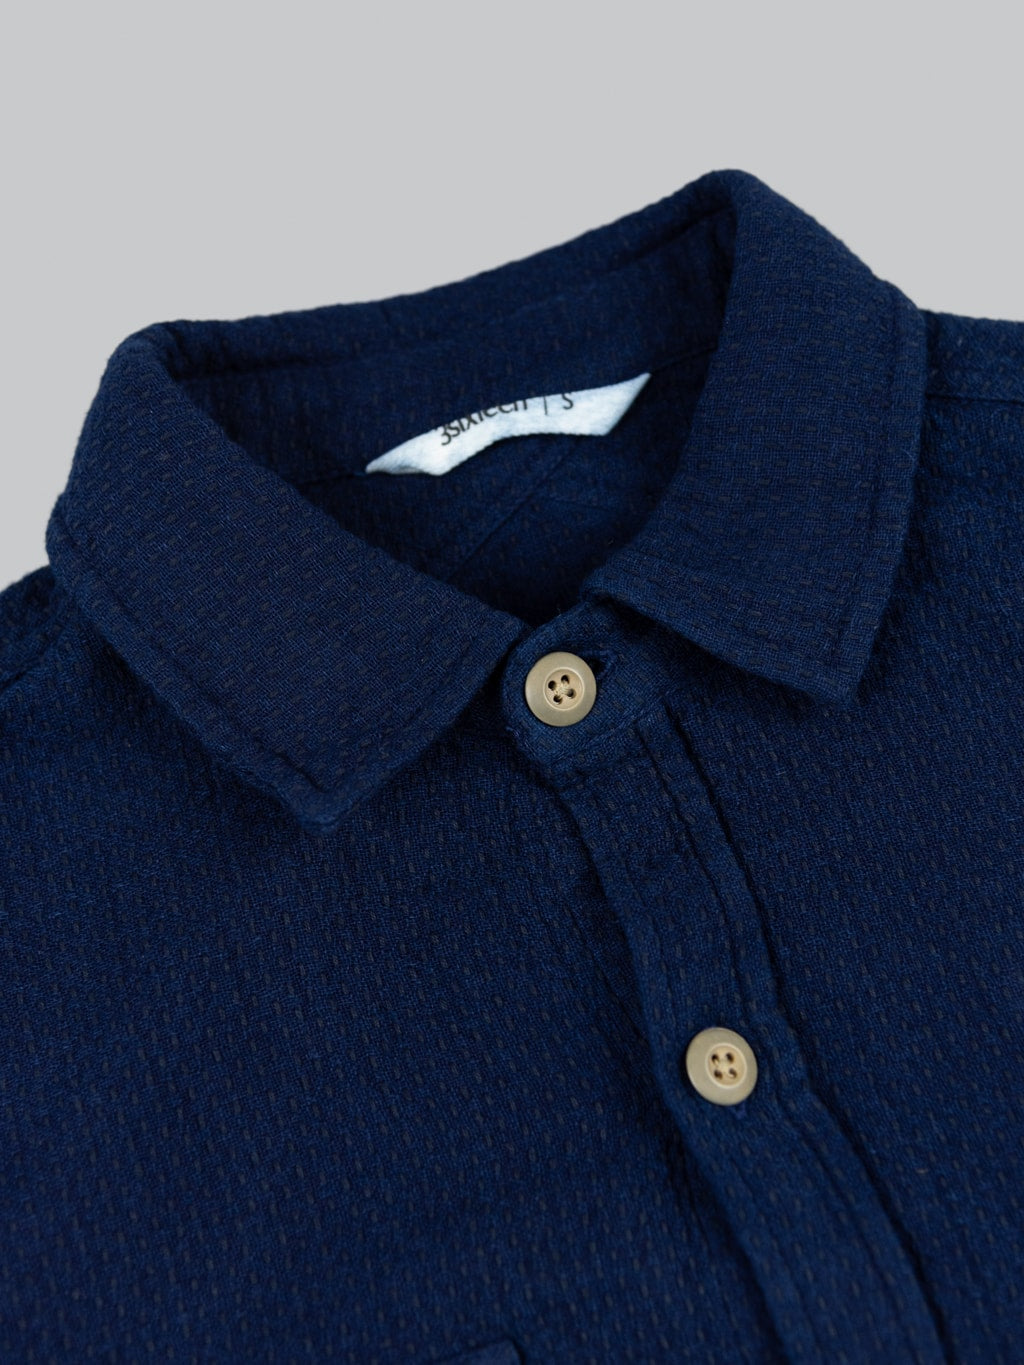 3sixteen CPO Shirt Indigo Sashiko collar buttons